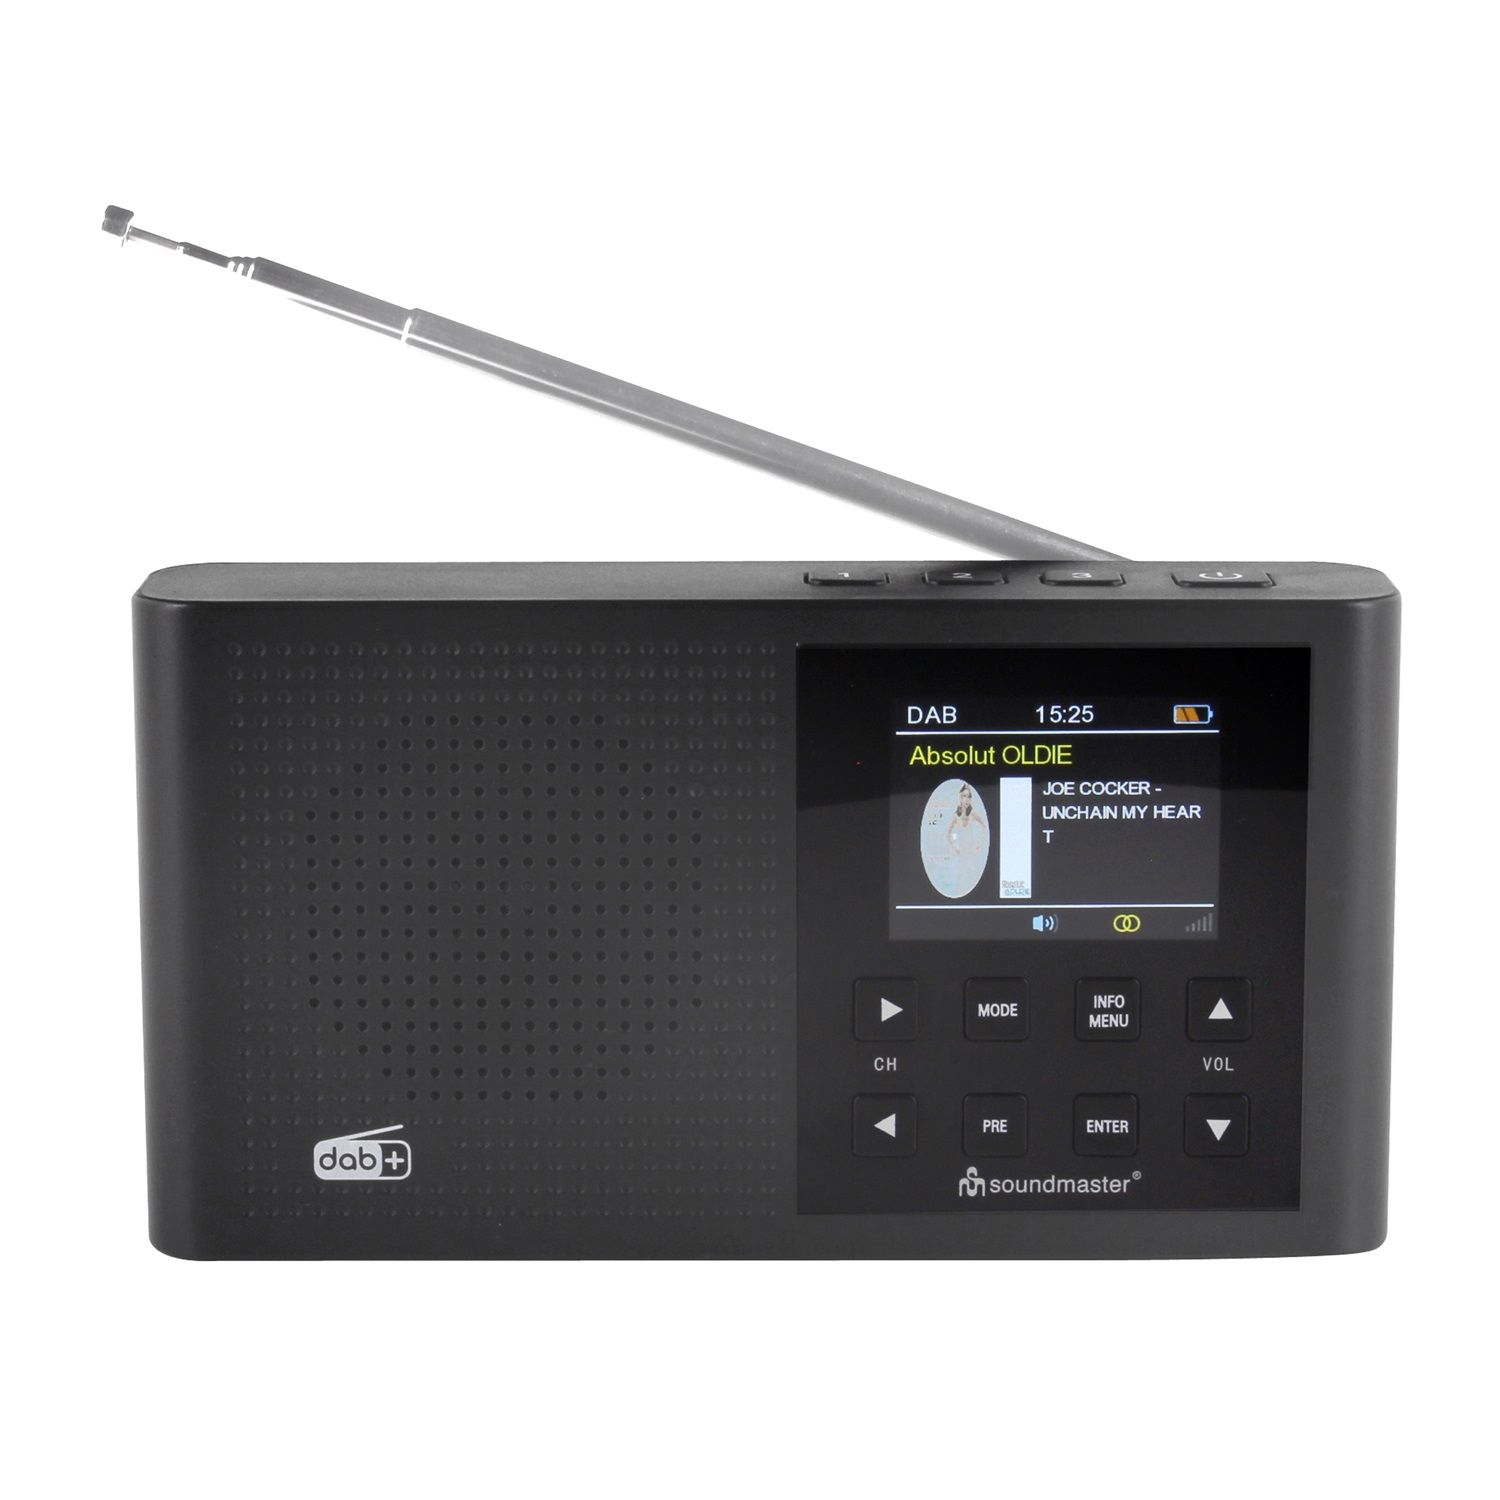 SOUNDMASTER Bluetooth, schwarz DAB, FM, DAB+, FM, Multifunktionsradio, AM, DAB+, DAB165SW